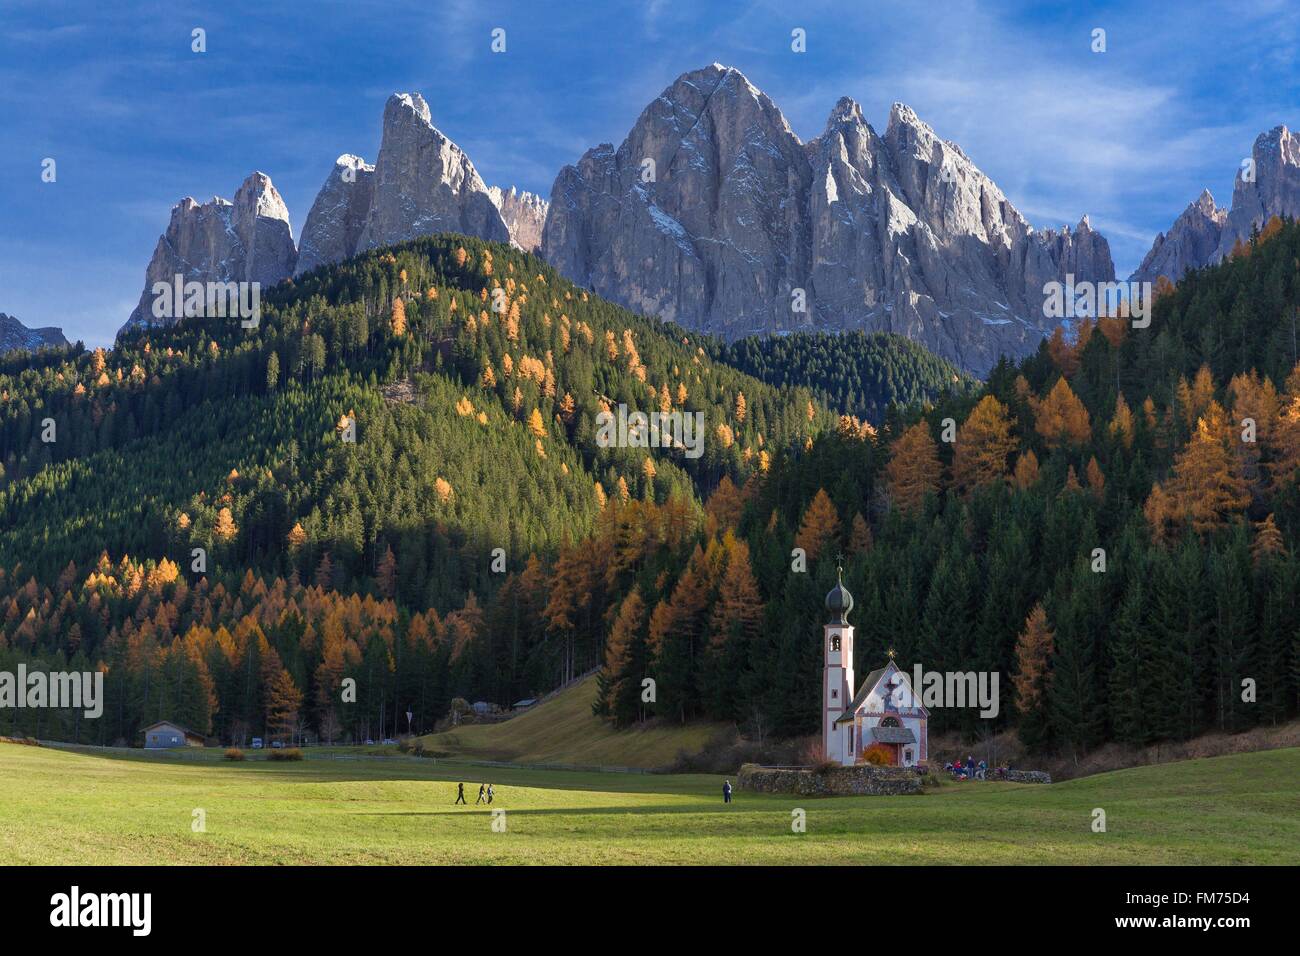 L'Italia, Trentino Alto Adige, Dolomiti massiccio elencati come patrimonio mondiale dall' UNESCO, Funes o Villnoss valley, Saint Johann chiesa, Odle montagne, parco naturale Puez Odle Foto Stock